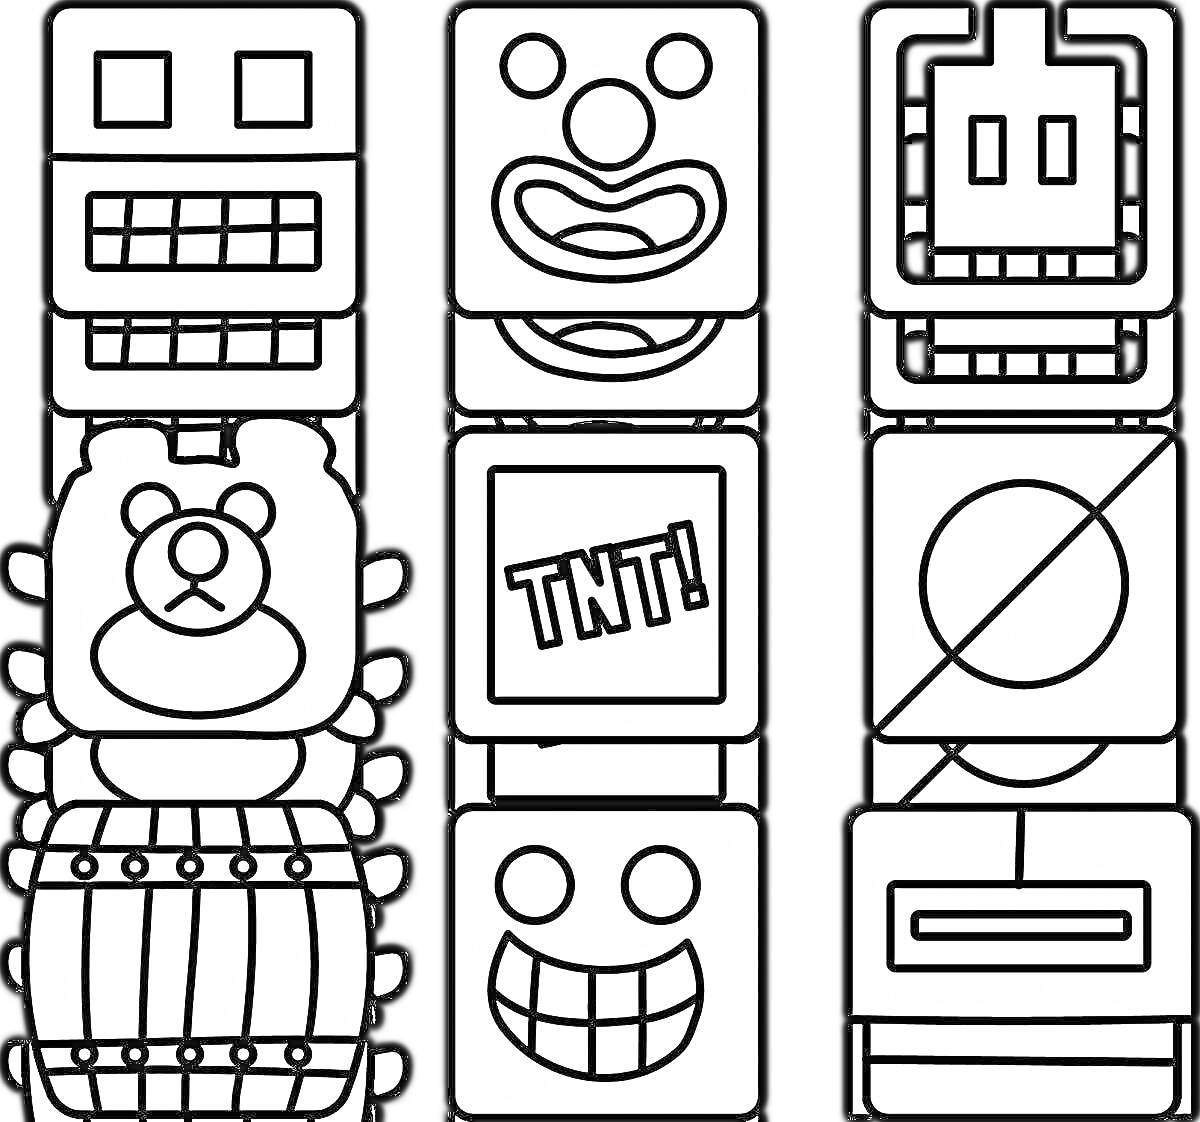 На раскраске изображено: Робот, Медведь, Бочка, Линии, Клоуны, Кубы